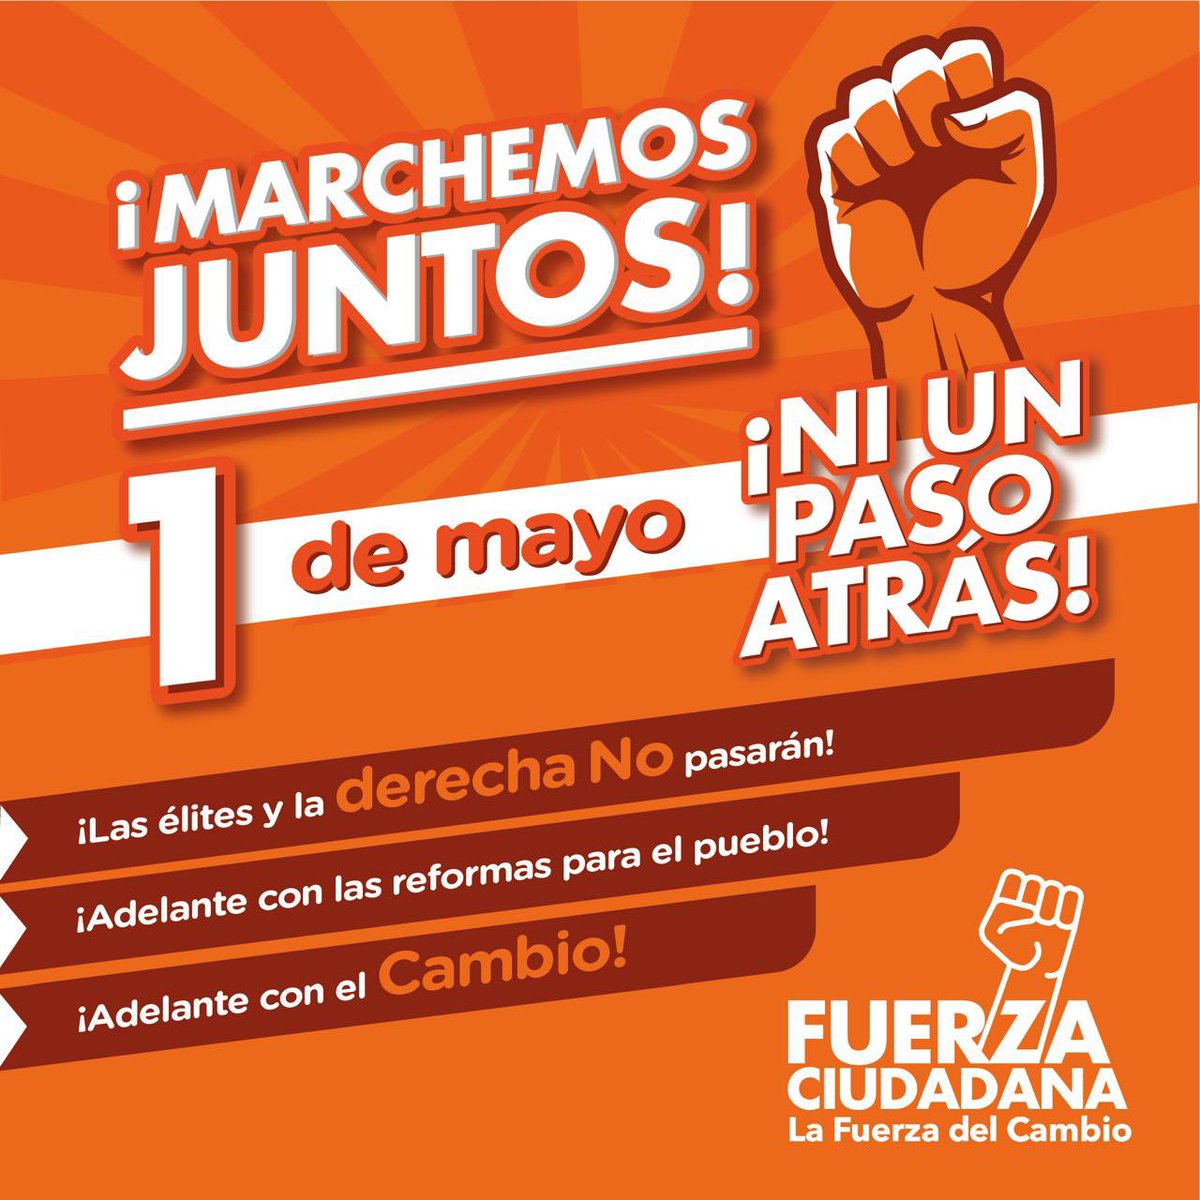 Este 1 de mayo con Fuerza saldremos a las calles en defensa de los derechos laborales y las reformas que necesita el pueblo colombiano para su dignificación. Marcharemos en contra de las élites, las mafias y la ultraderecha que insisten en negar a las mayorías acceso a